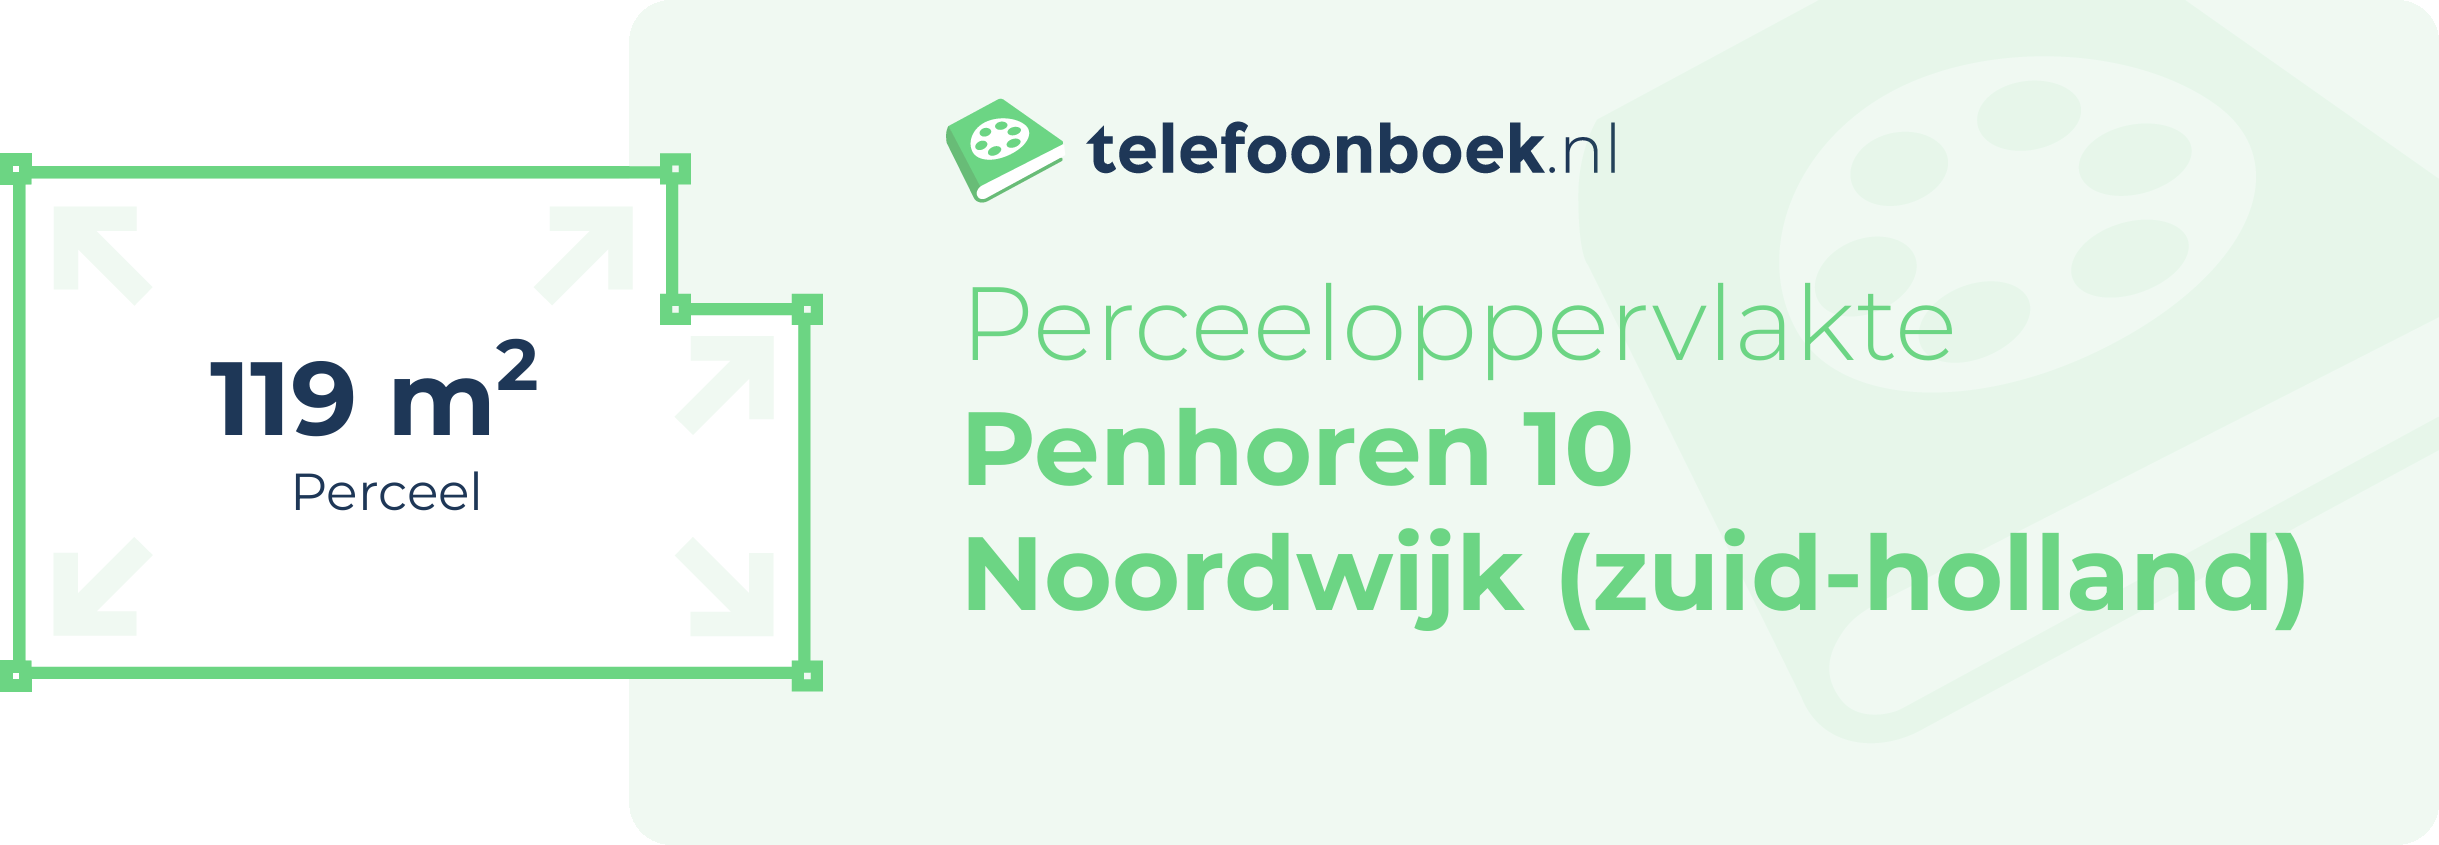 Perceeloppervlakte Penhoren 10 Noordwijk (Zuid-Holland)